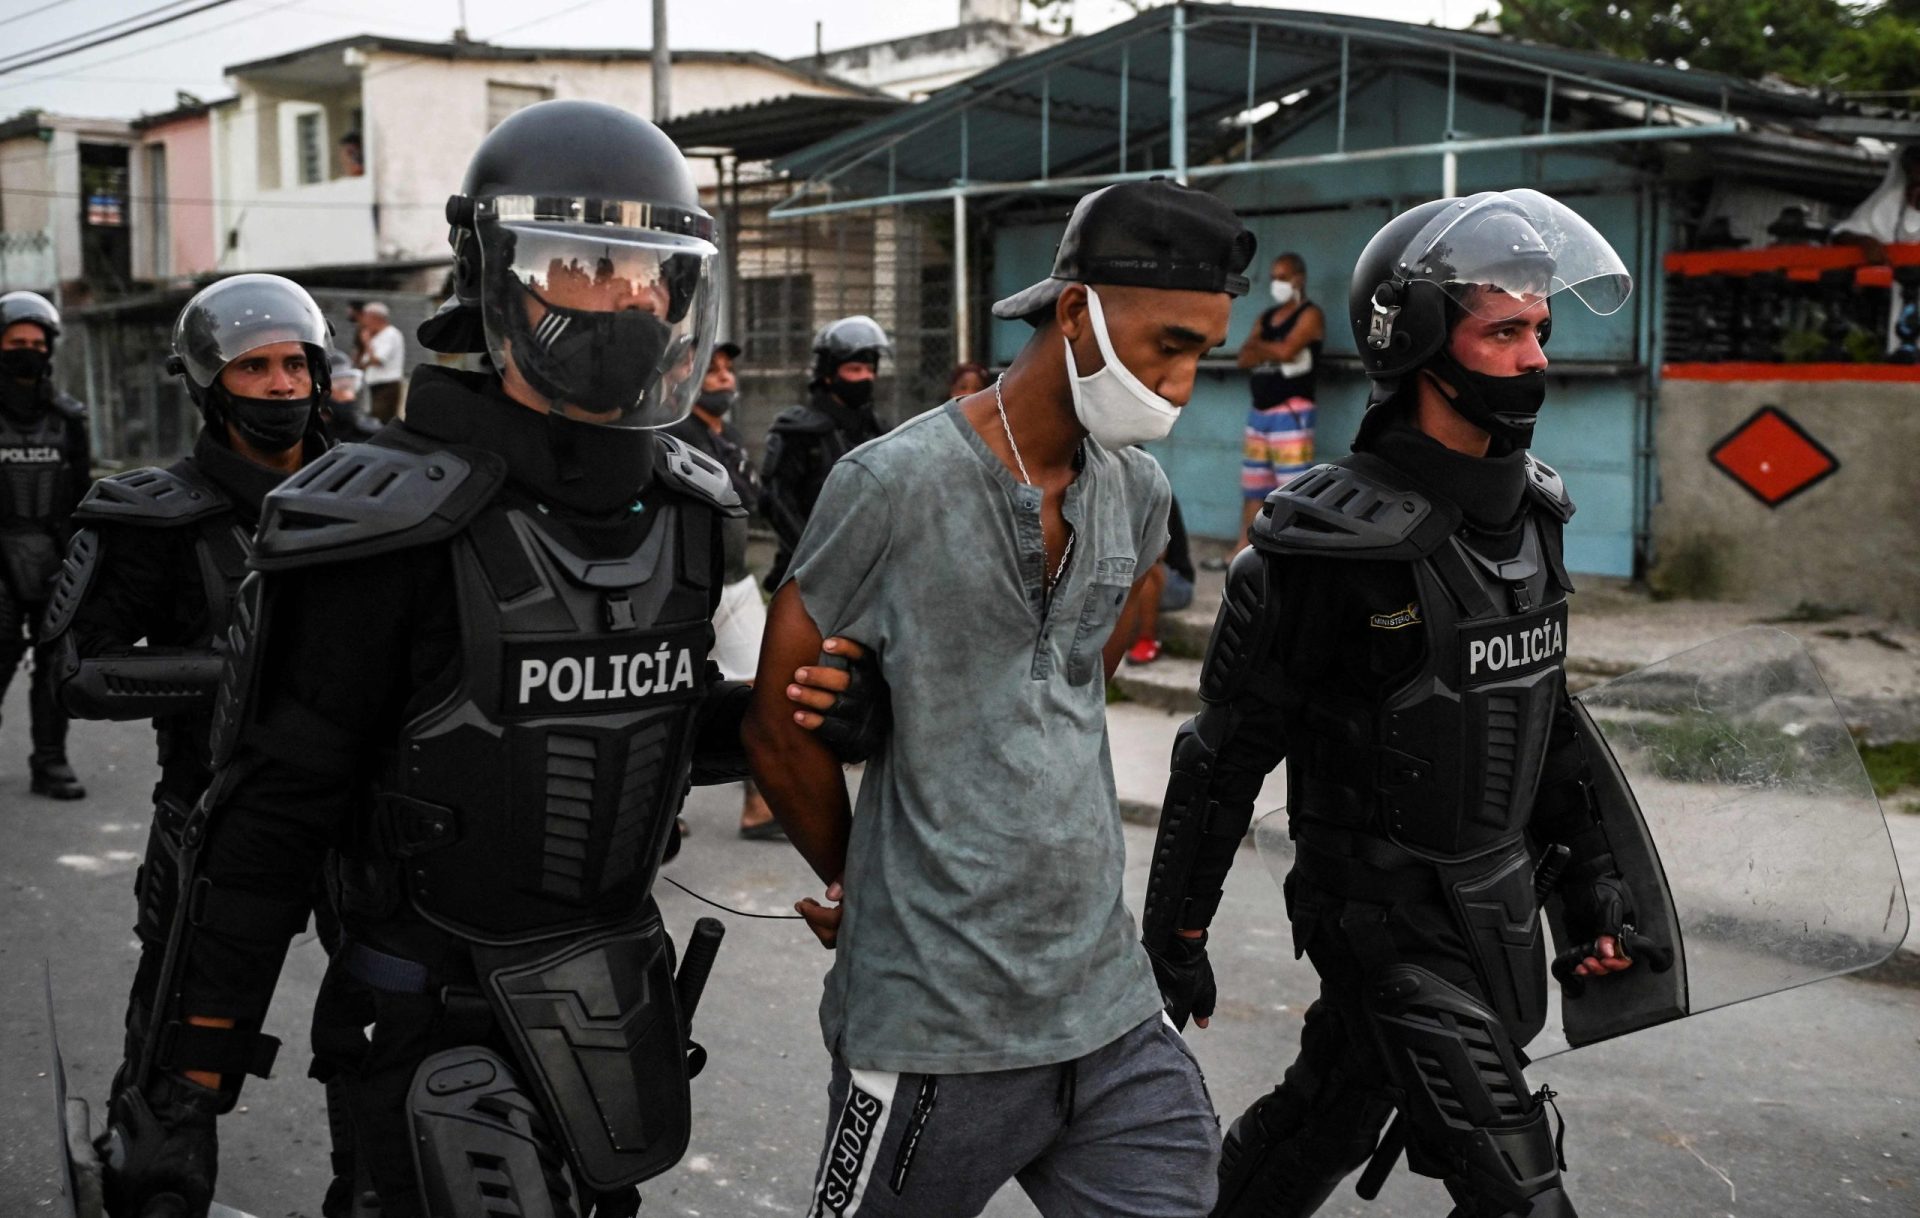 Depoimentos de violência policial em Cuba